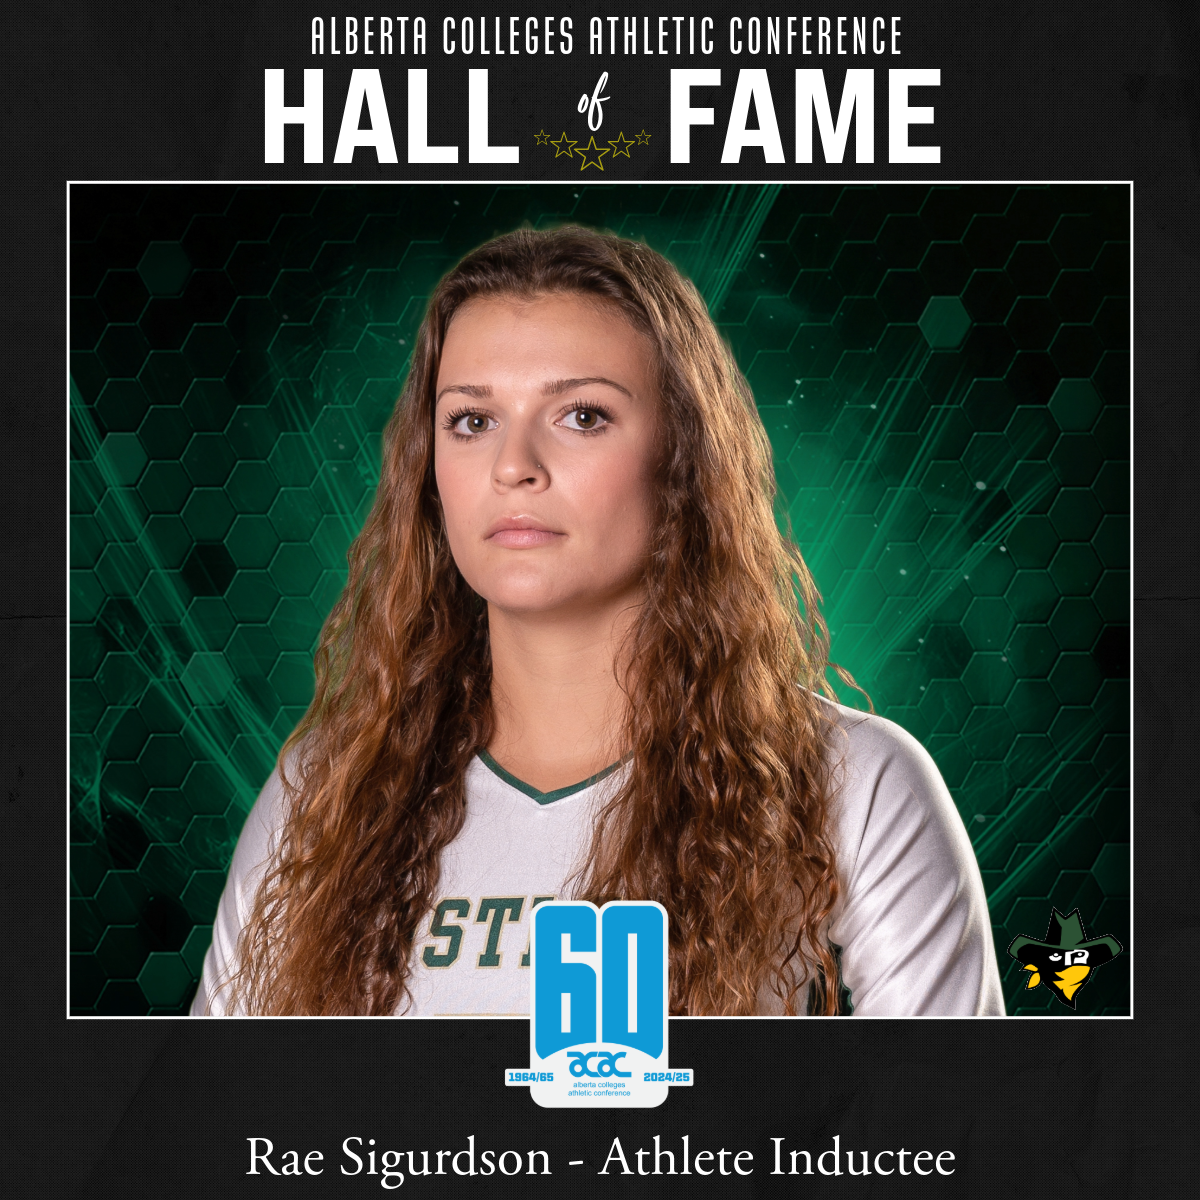 ACAC Hall of Fame Athlete Inductee: Rae Sigurdson